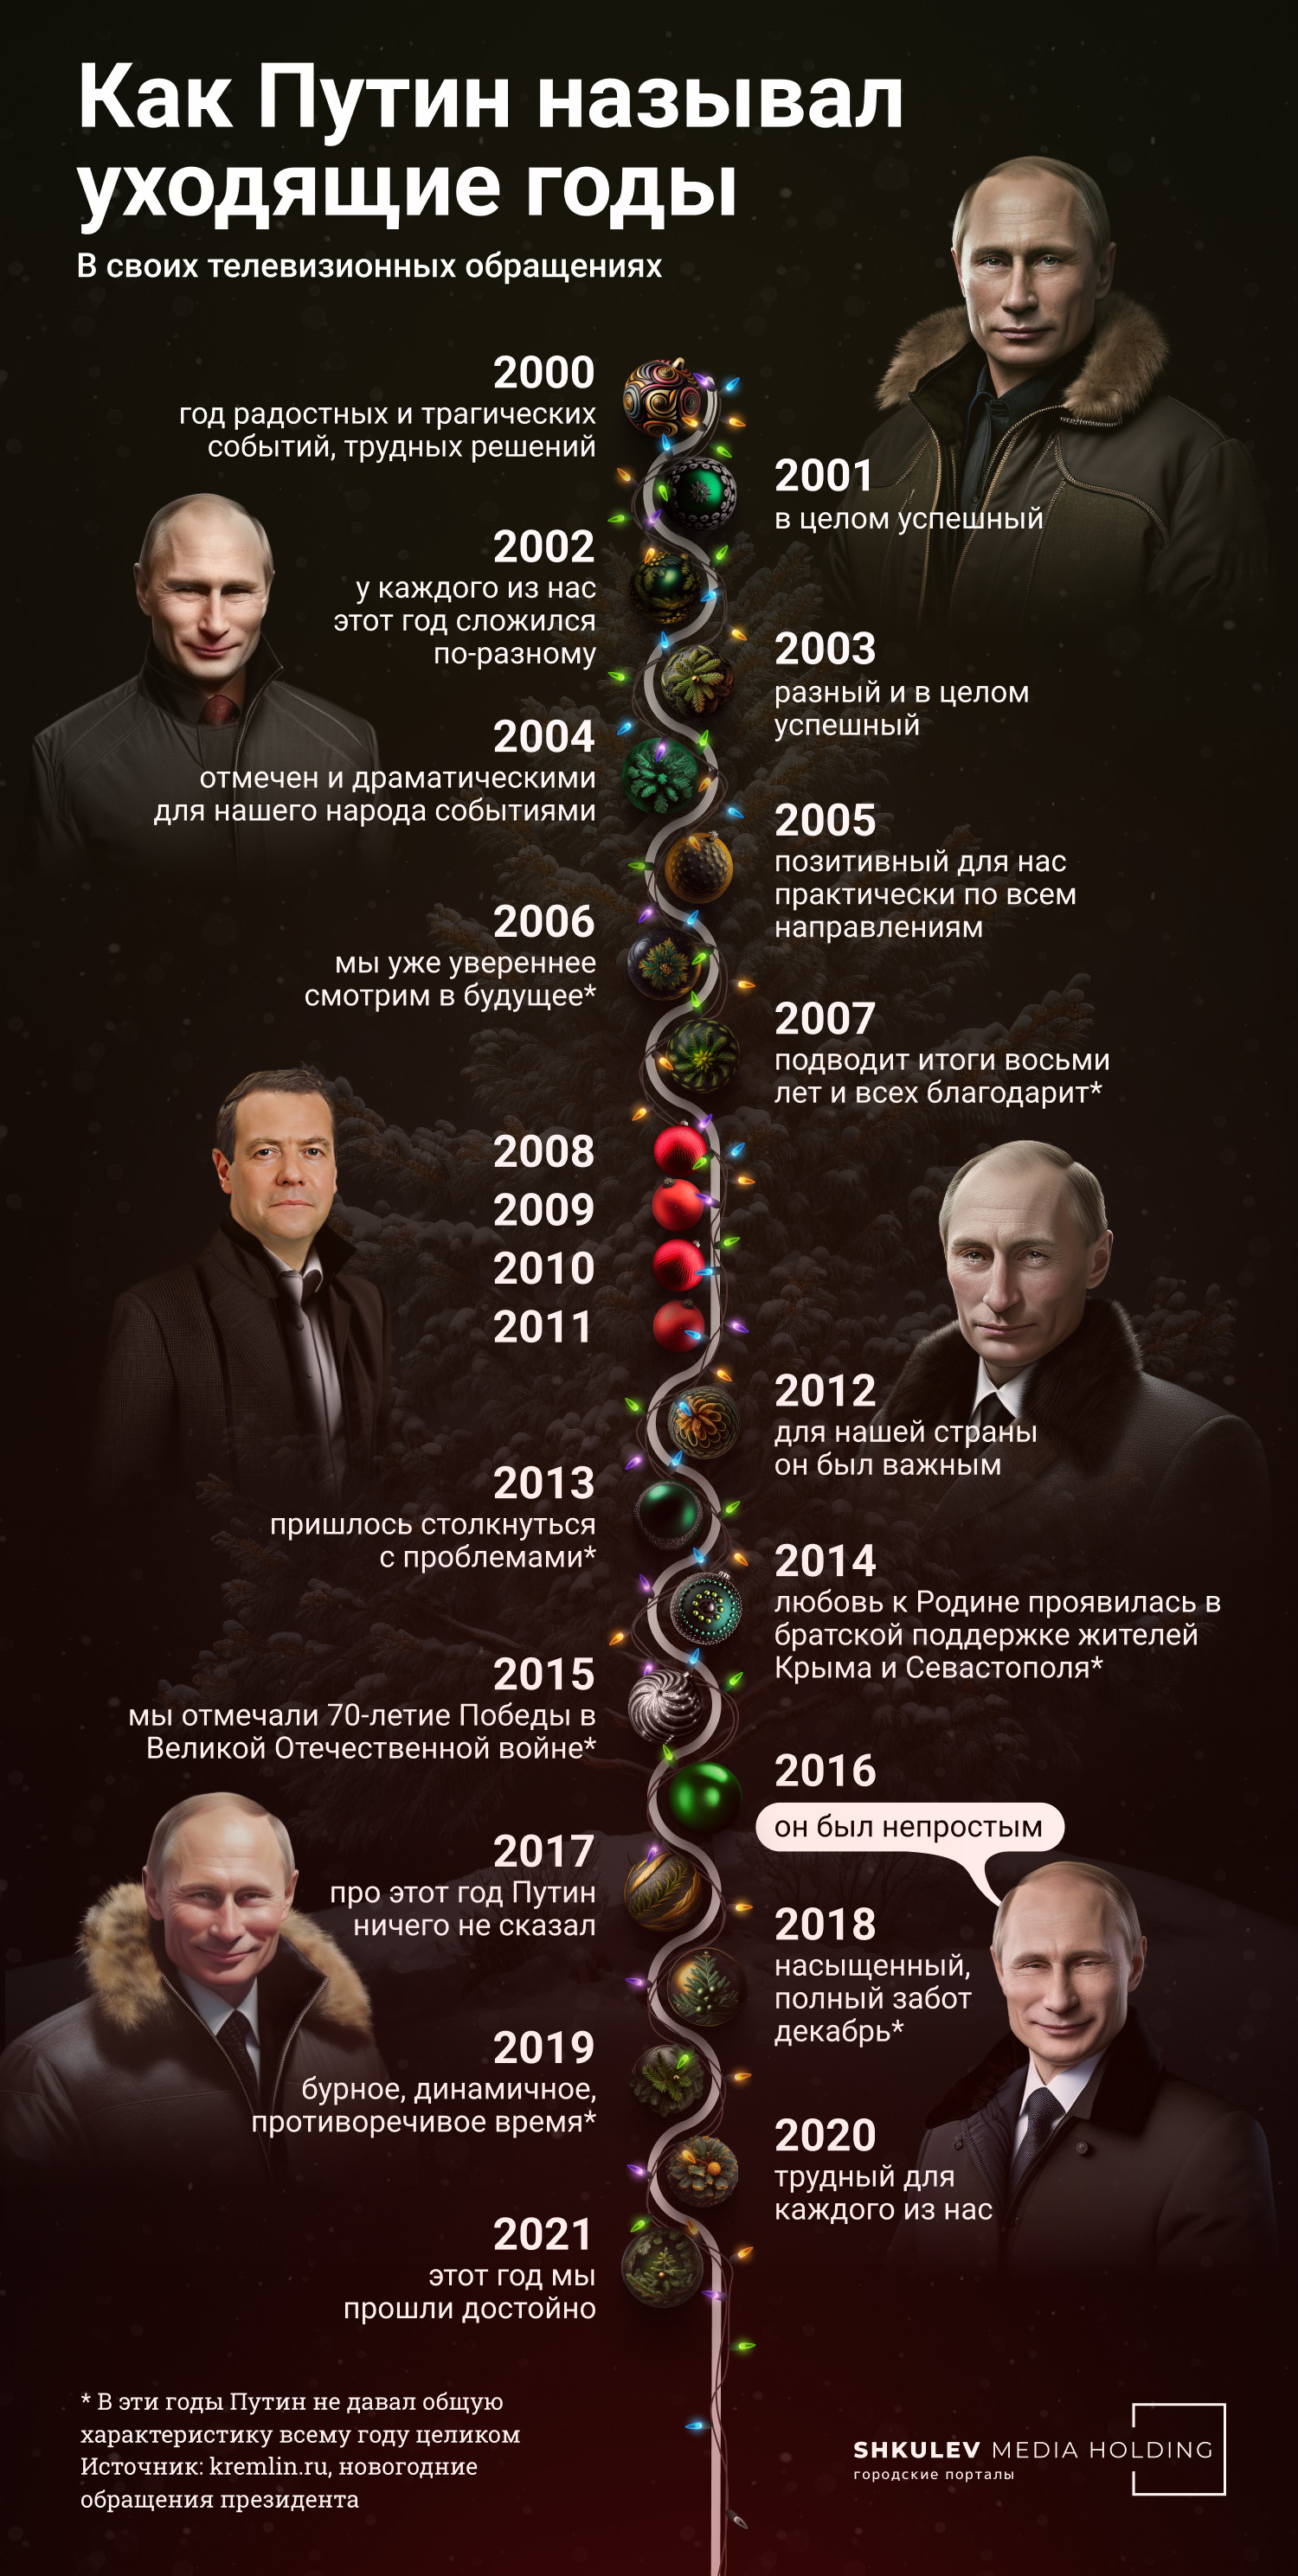 Какими были уходящие годы, по мнению Владимира Путина